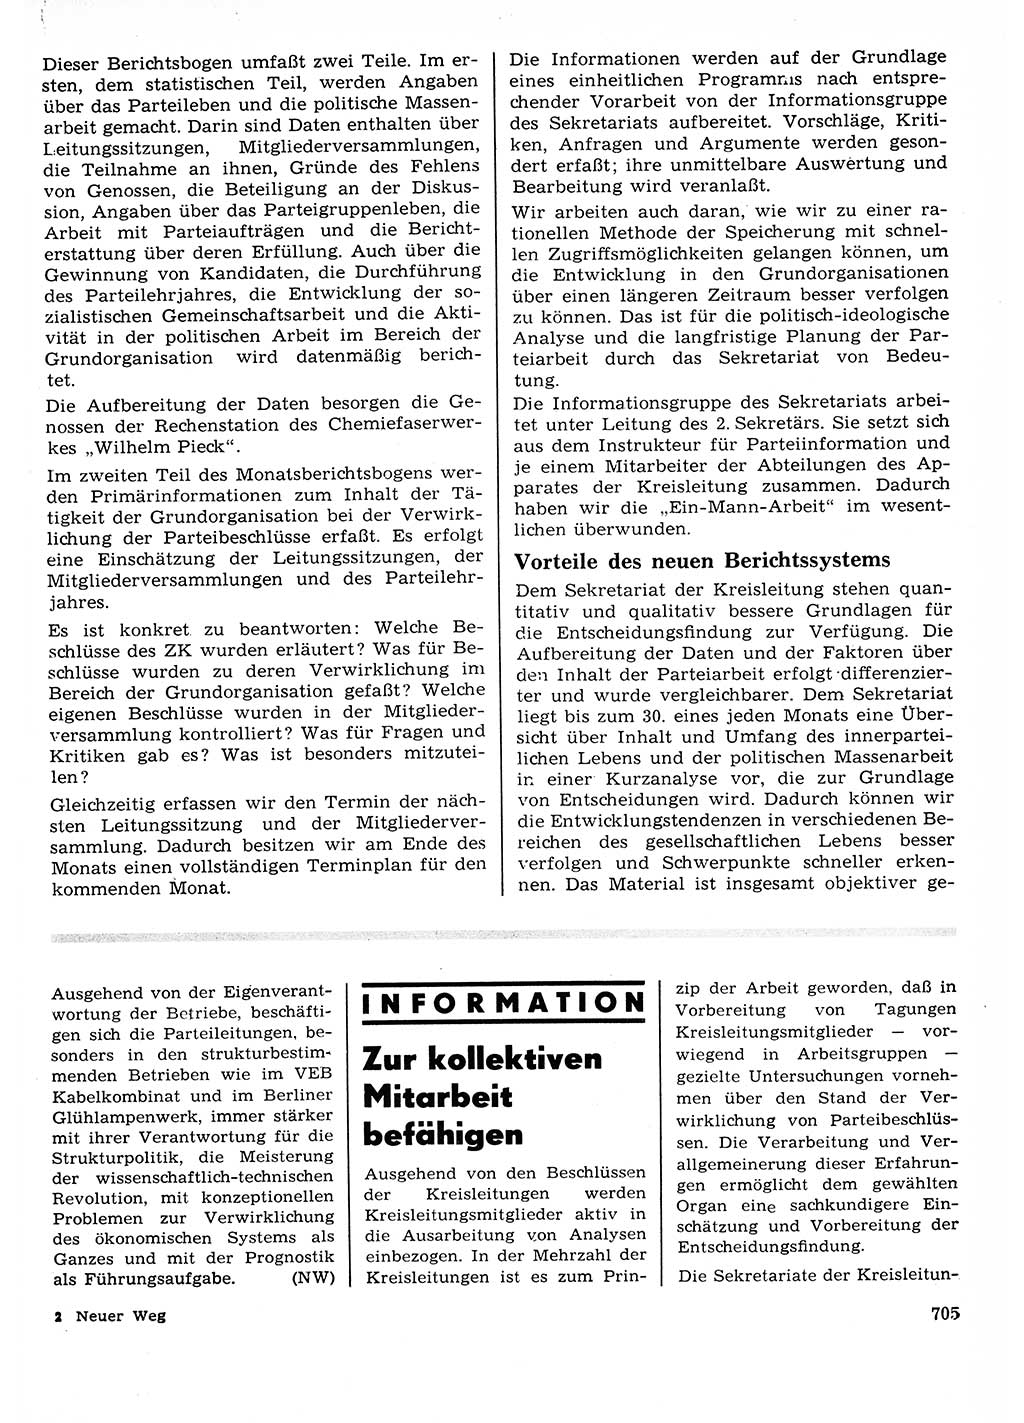 Neuer Weg (NW), Organ des Zentralkomitees (ZK) der SED (Sozialistische Einheitspartei Deutschlands) für Fragen des Parteilebens, 23. Jahrgang [Deutsche Demokratische Republik (DDR)] 1968, Seite 705 (NW ZK SED DDR 1968, S. 705)